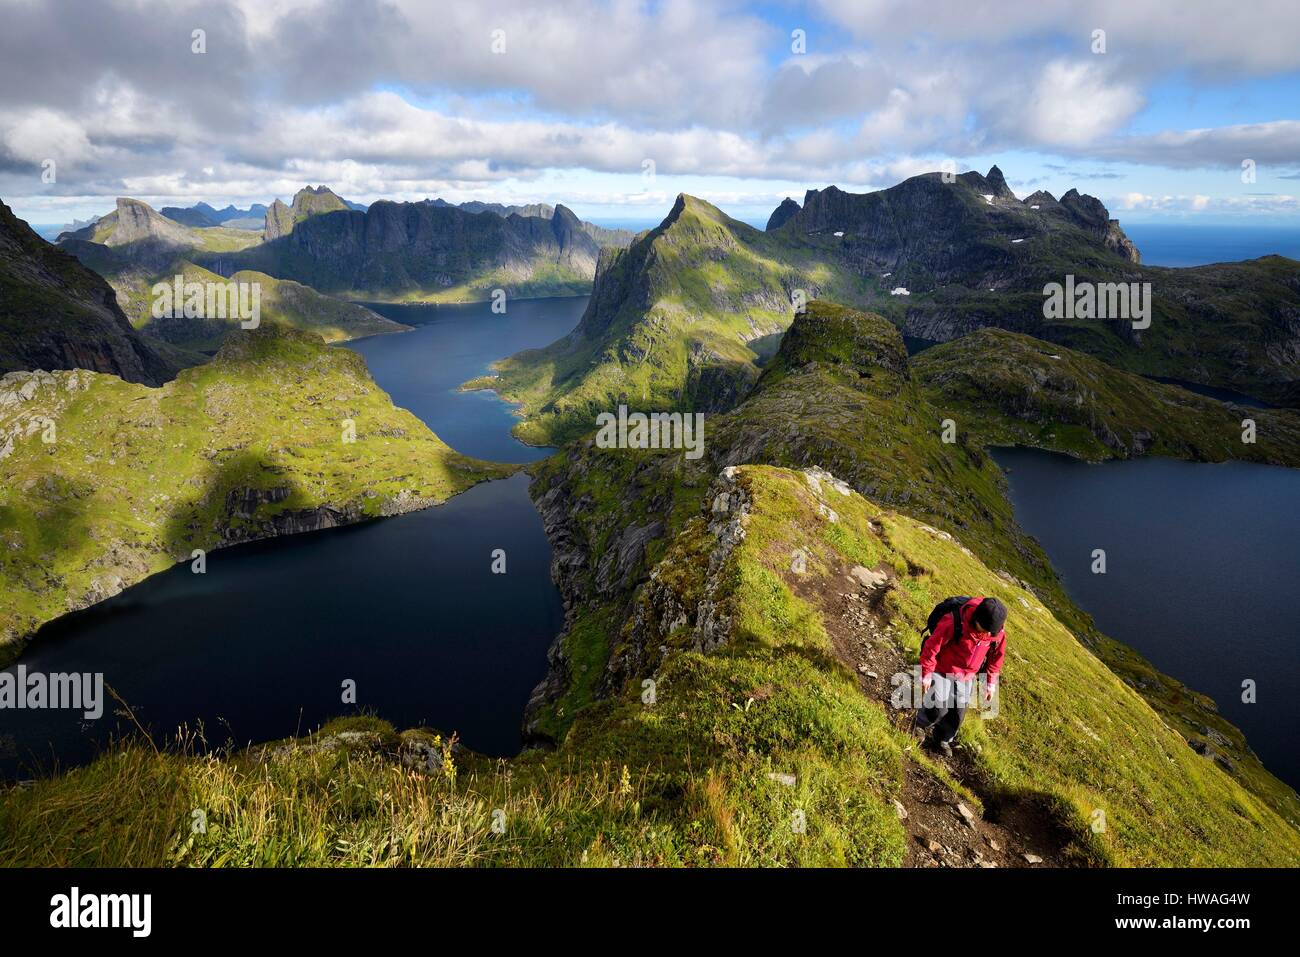 Norvegia, Nordland, isole Lofoten, isola Moskenesoy, escursionismo al vertice di Hermannsdalstinden (la montagna più alta dell'isola a 1029m), ultimo p Foto Stock